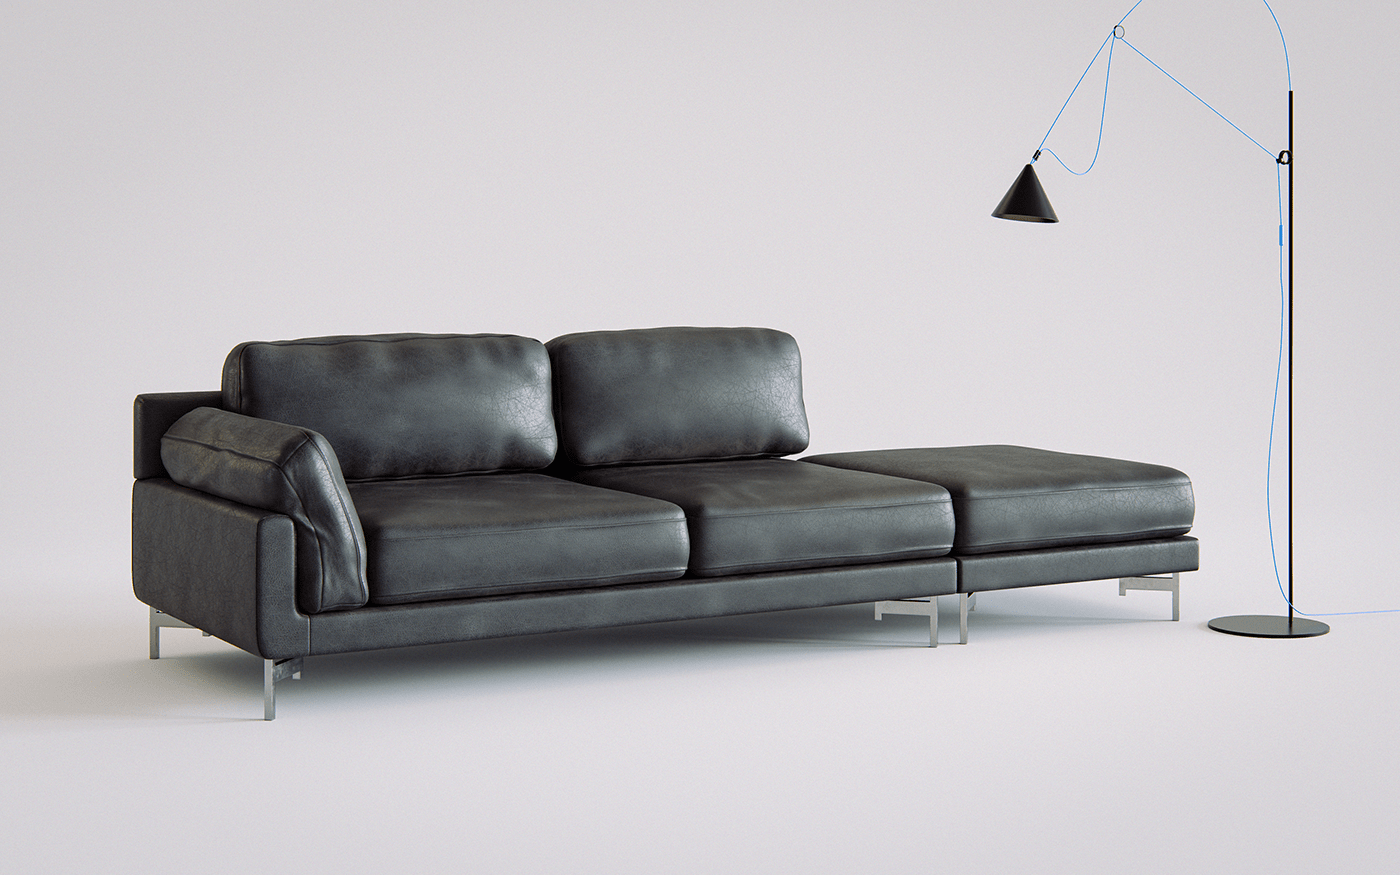 CGI Couch design furniture design  Interior interior design  product design  Render sofa furniture